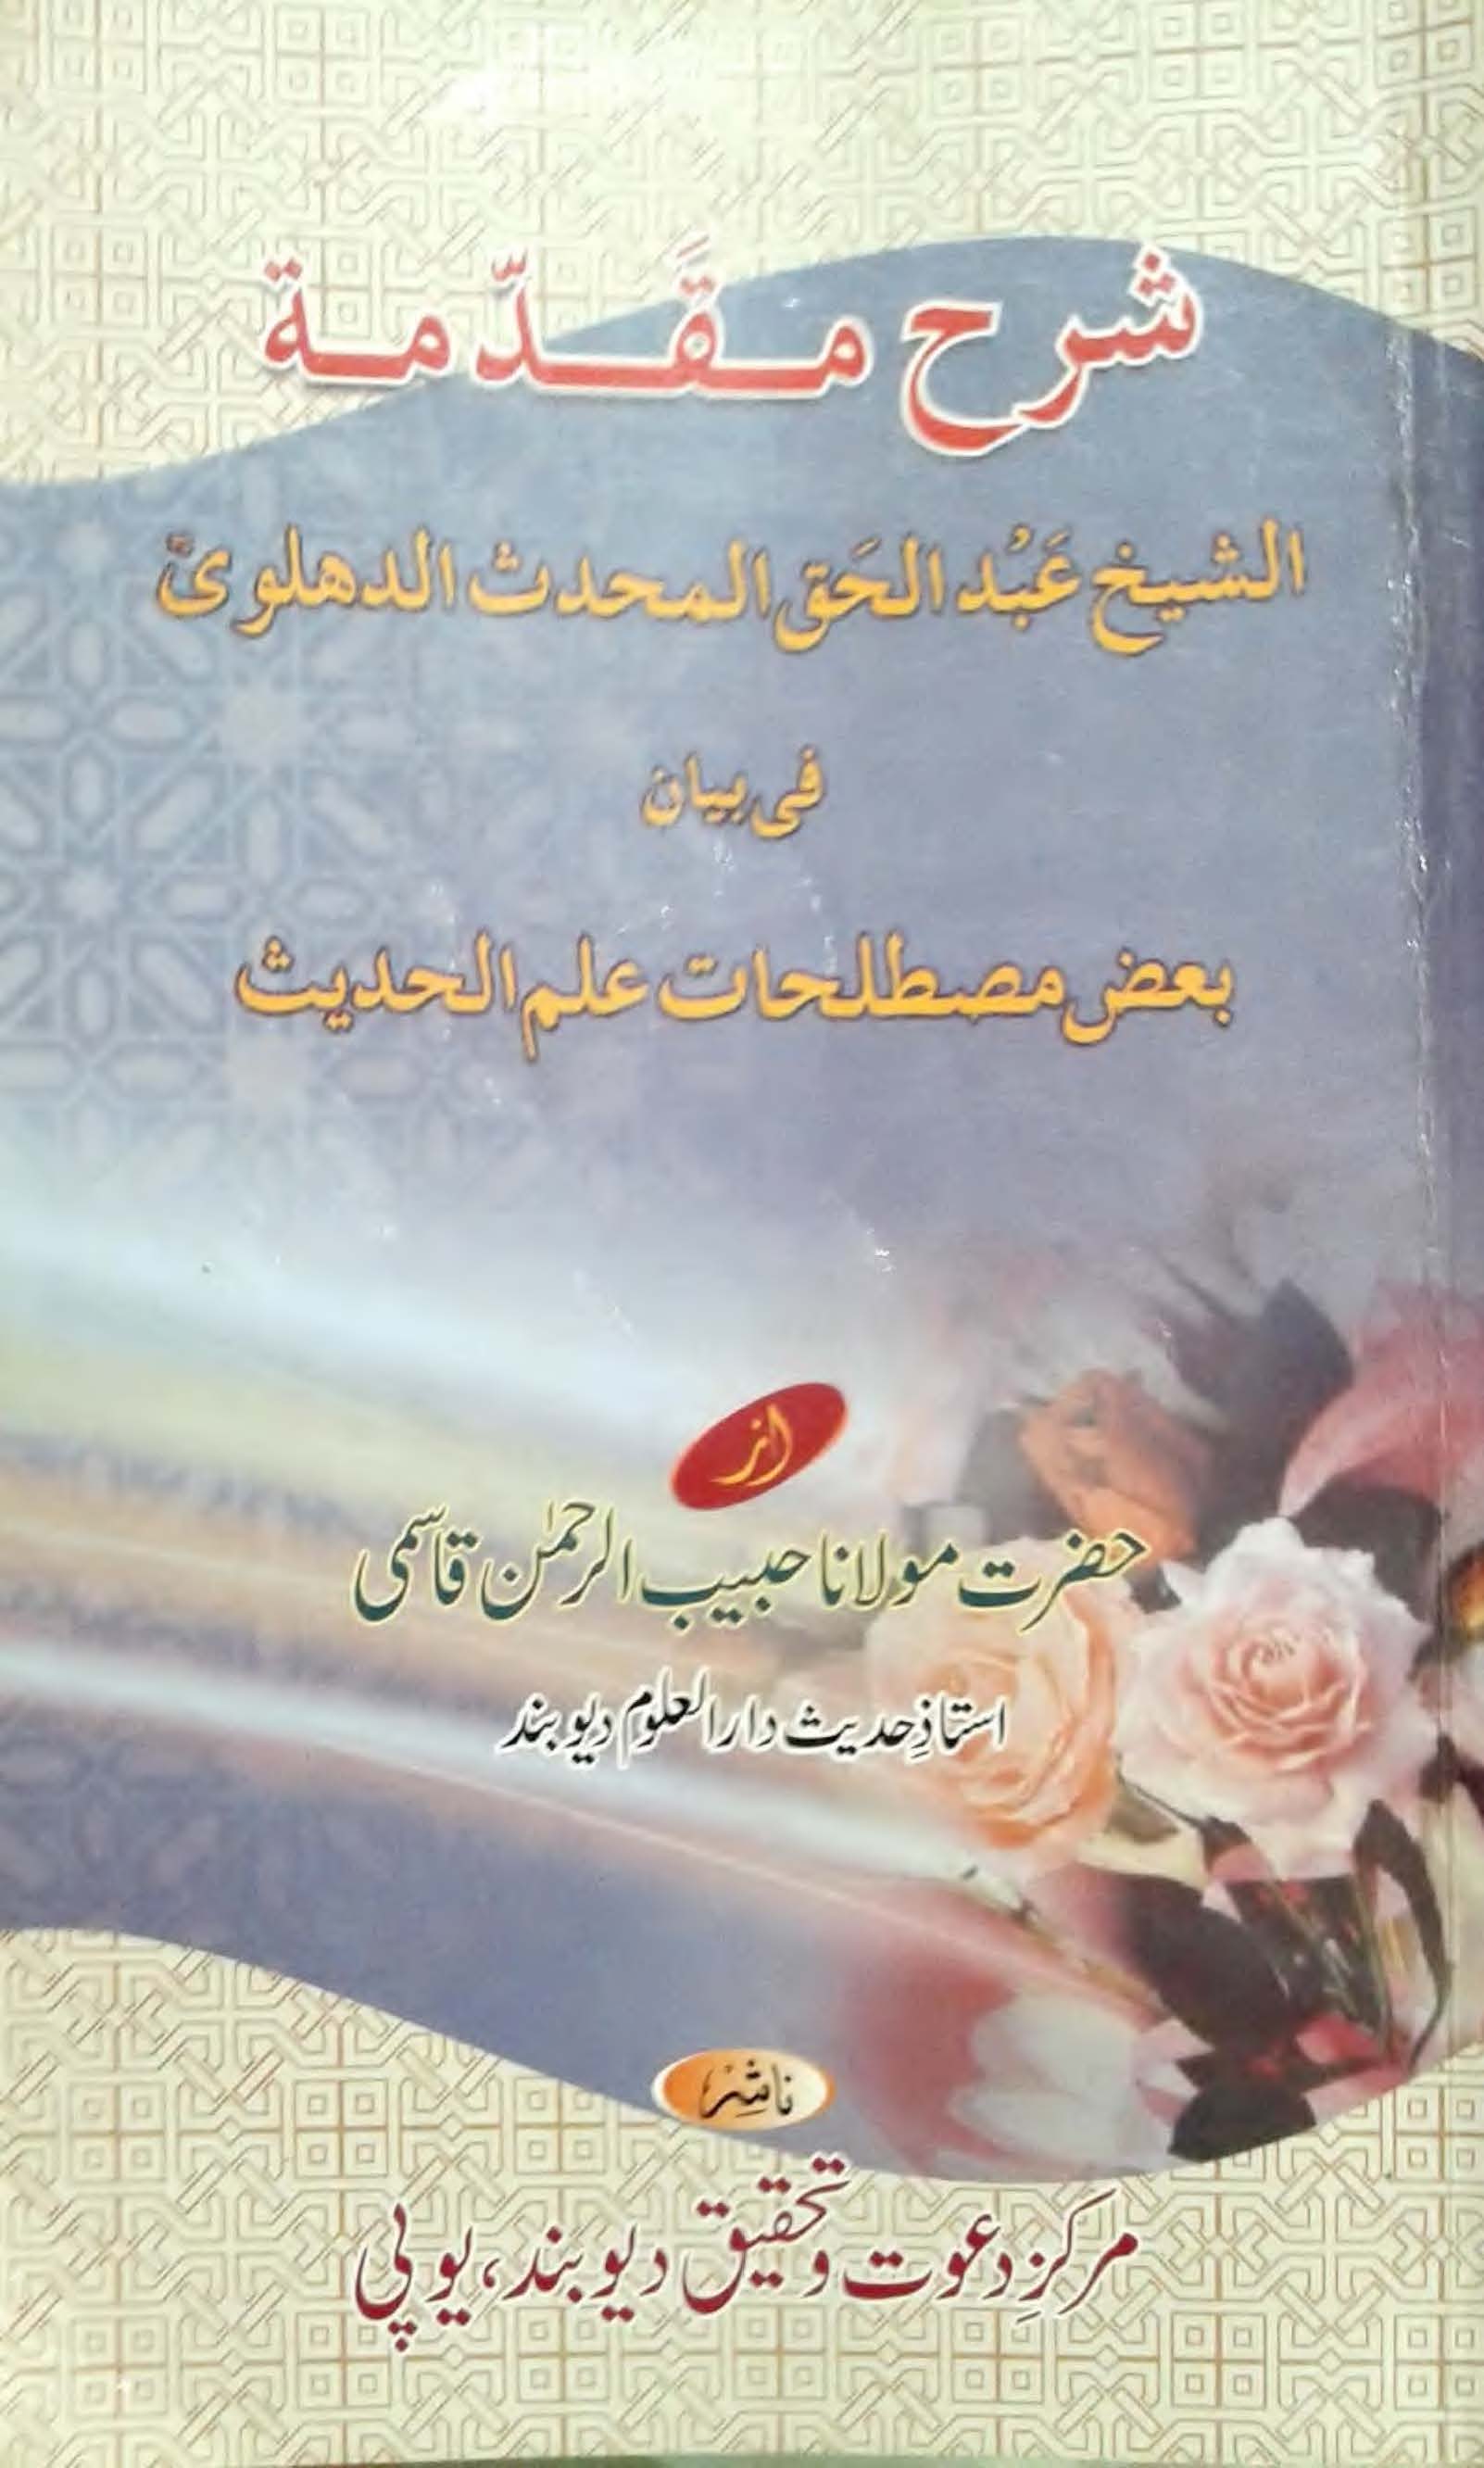 Sharah Muqaddimah Shaykh Abdul Haq ra , Maulana Habibur Rahman Qasmi -, Urdu Translation and commentary of Muqadimmah fi Usool al Hadith of Shaykh Abdul Haq Dehlvi (r.a)